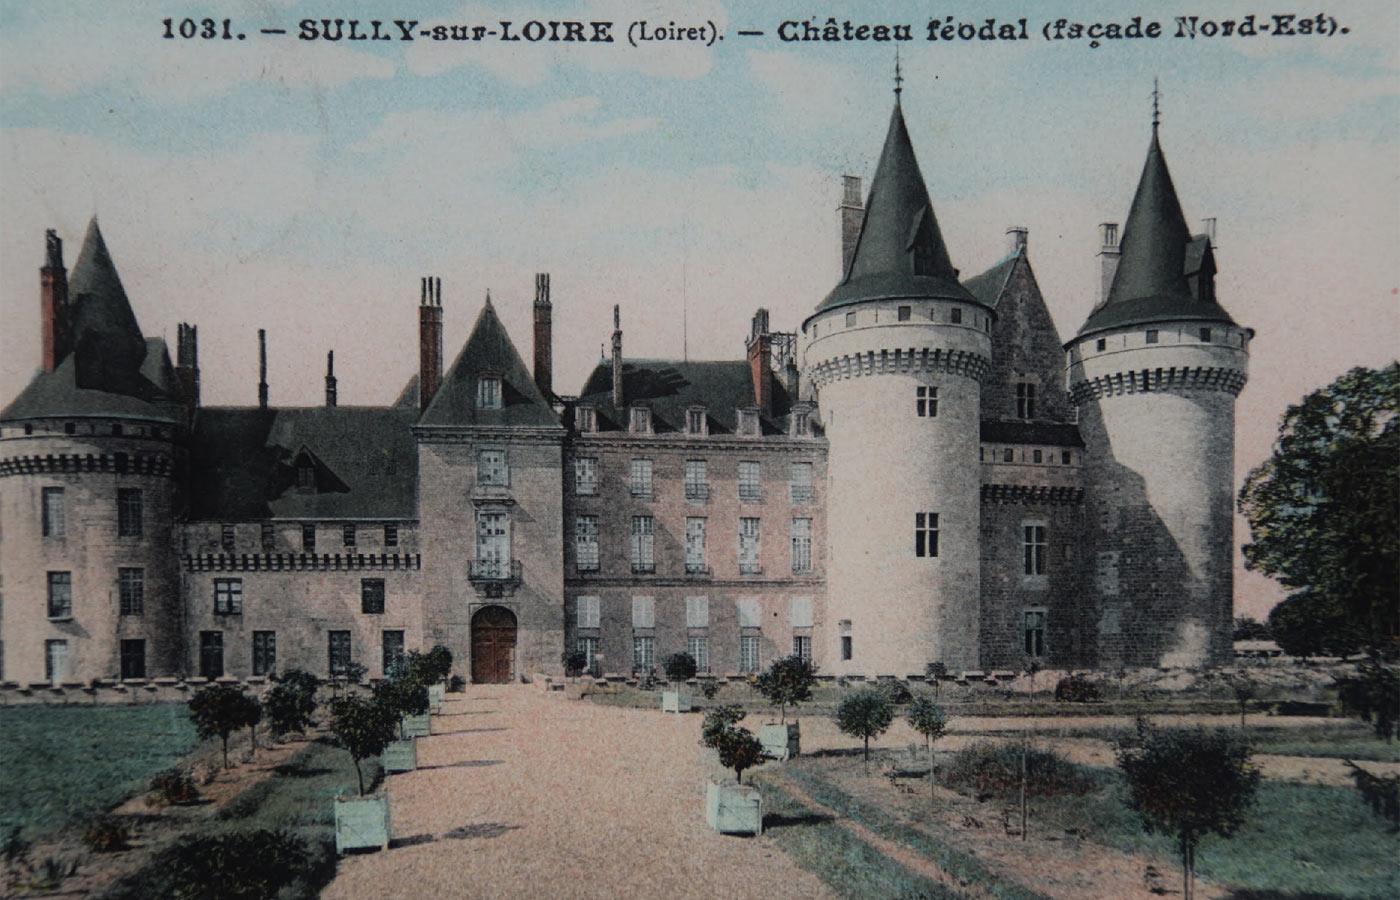 Carte postale colorisée montrant les abords du château au début du 20e siècle